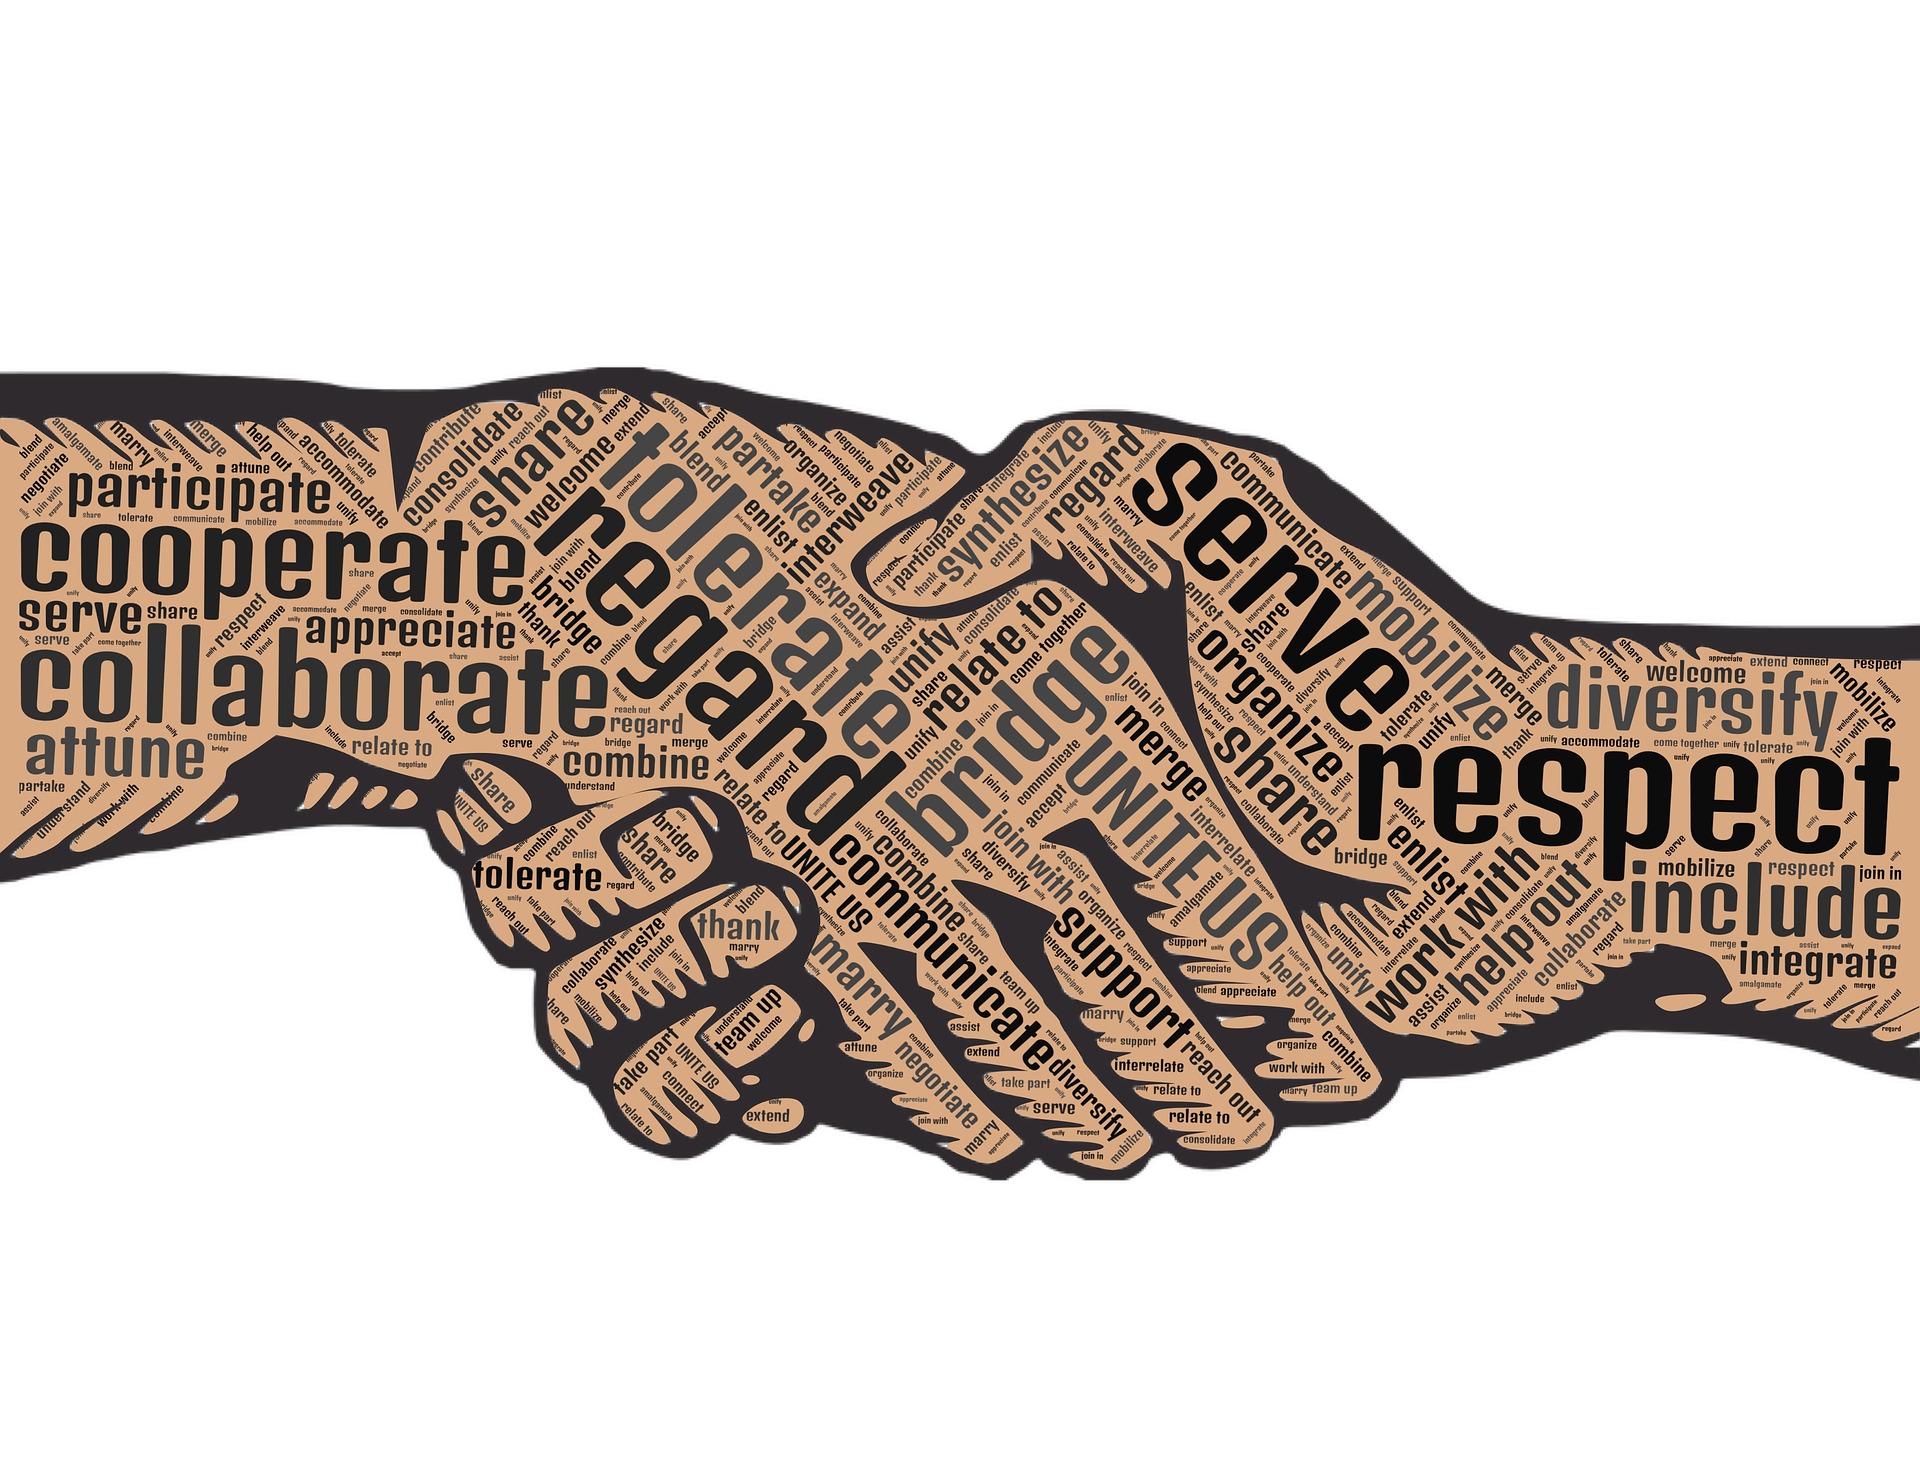 handshake depicting respect